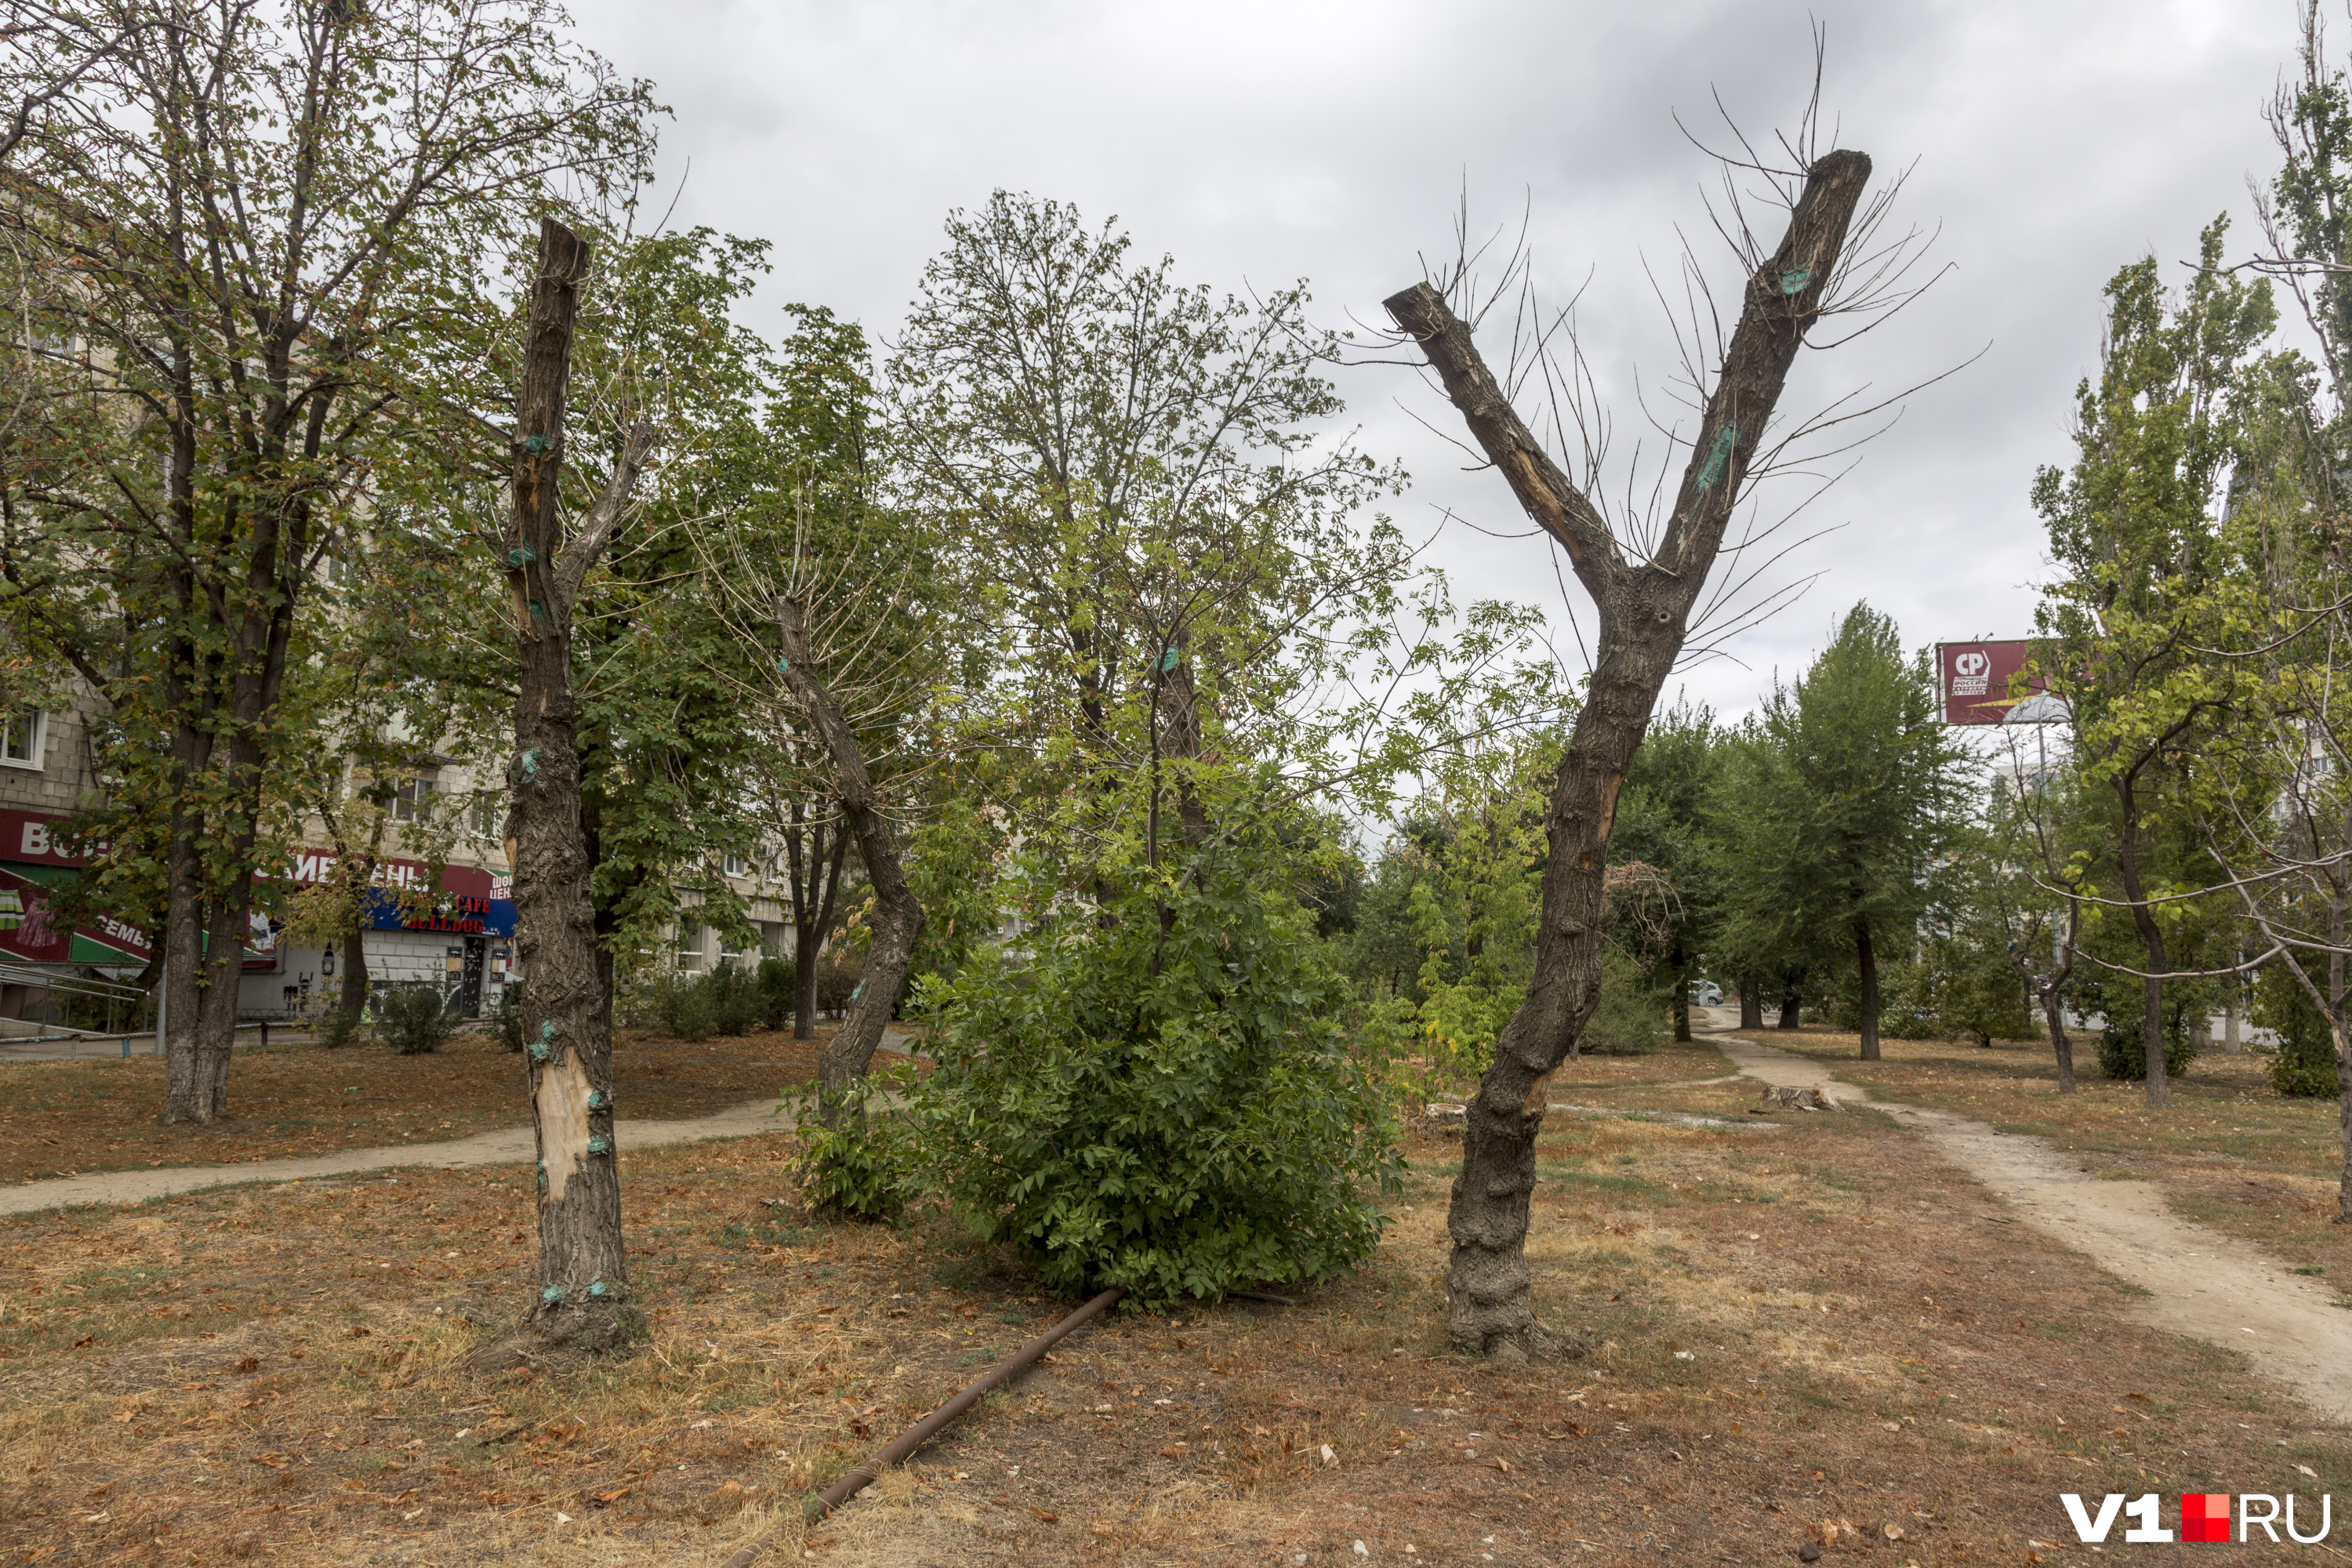 Подвергшиеся "санитарной обрезке" деревья выглядят как умерший бренд Волгограда за 3.5 миллиона